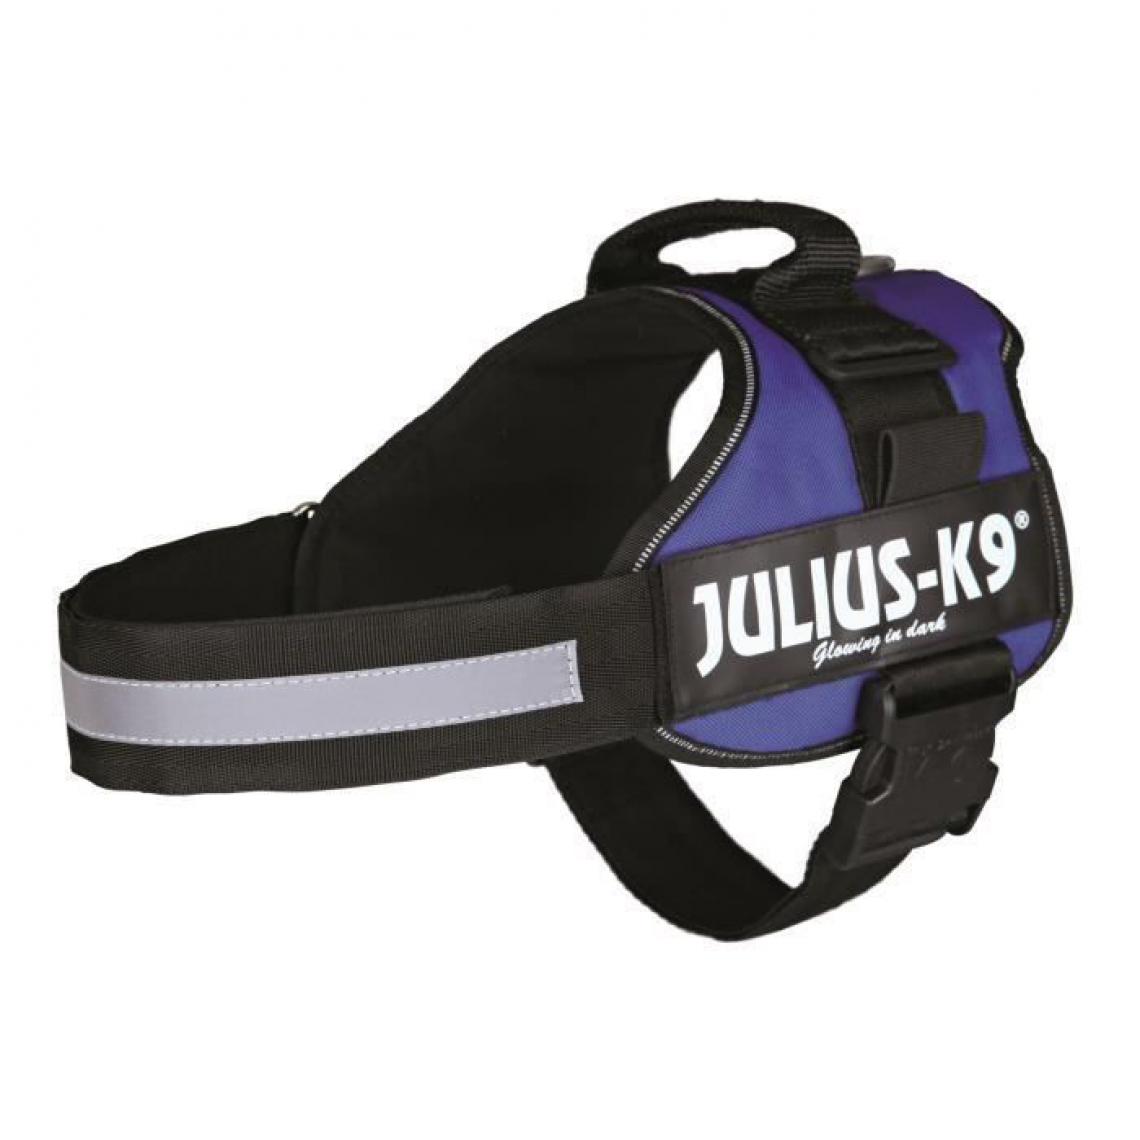 Julius K9 - Harnais Power Julius-K9 - 1 - L : 66-85 cm-50 mm - Bleu - Pour chien - Equipement de transport pour chien